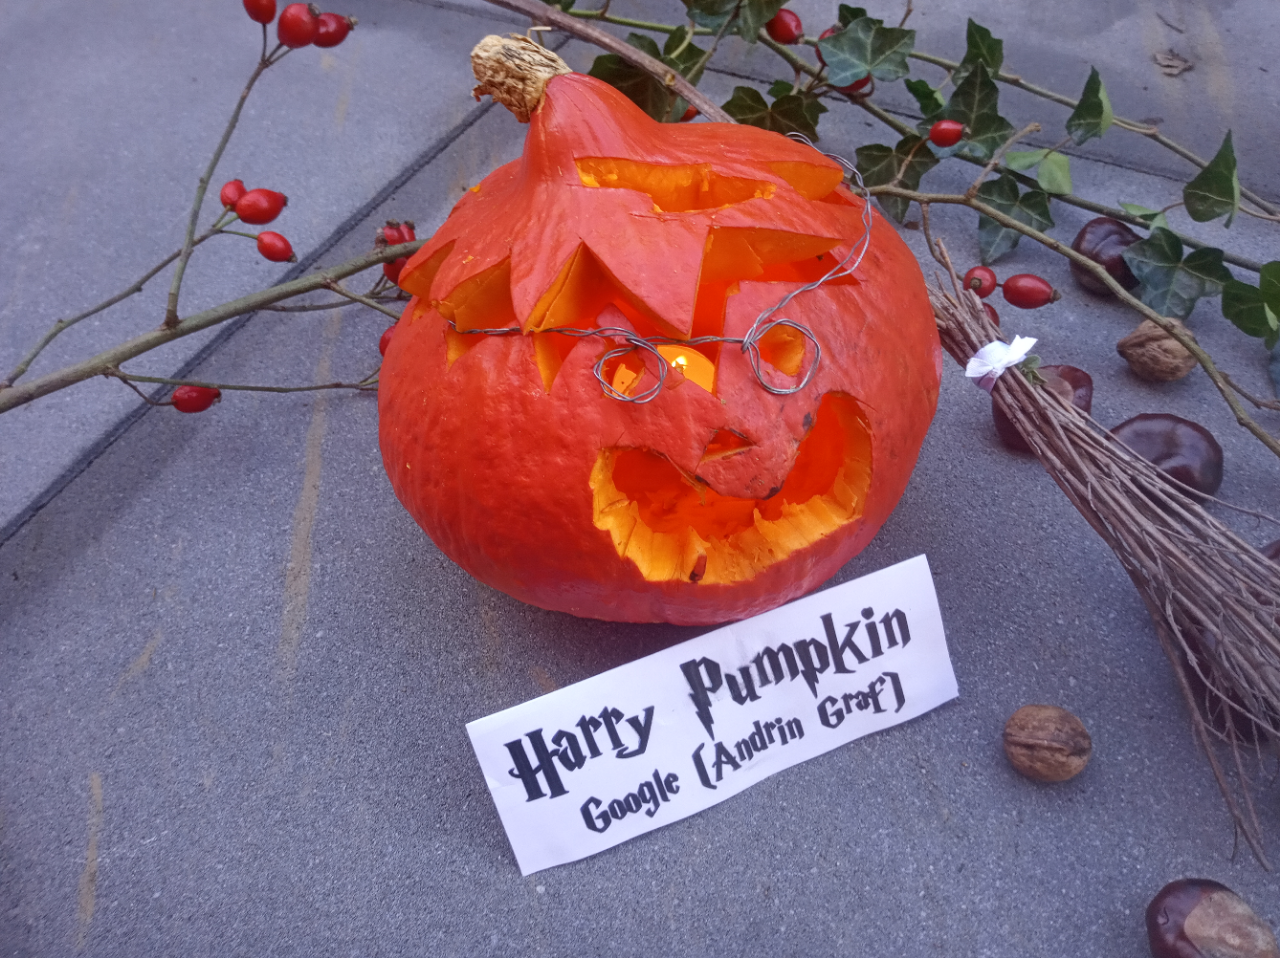 "Harry Pumpkin" (Google)